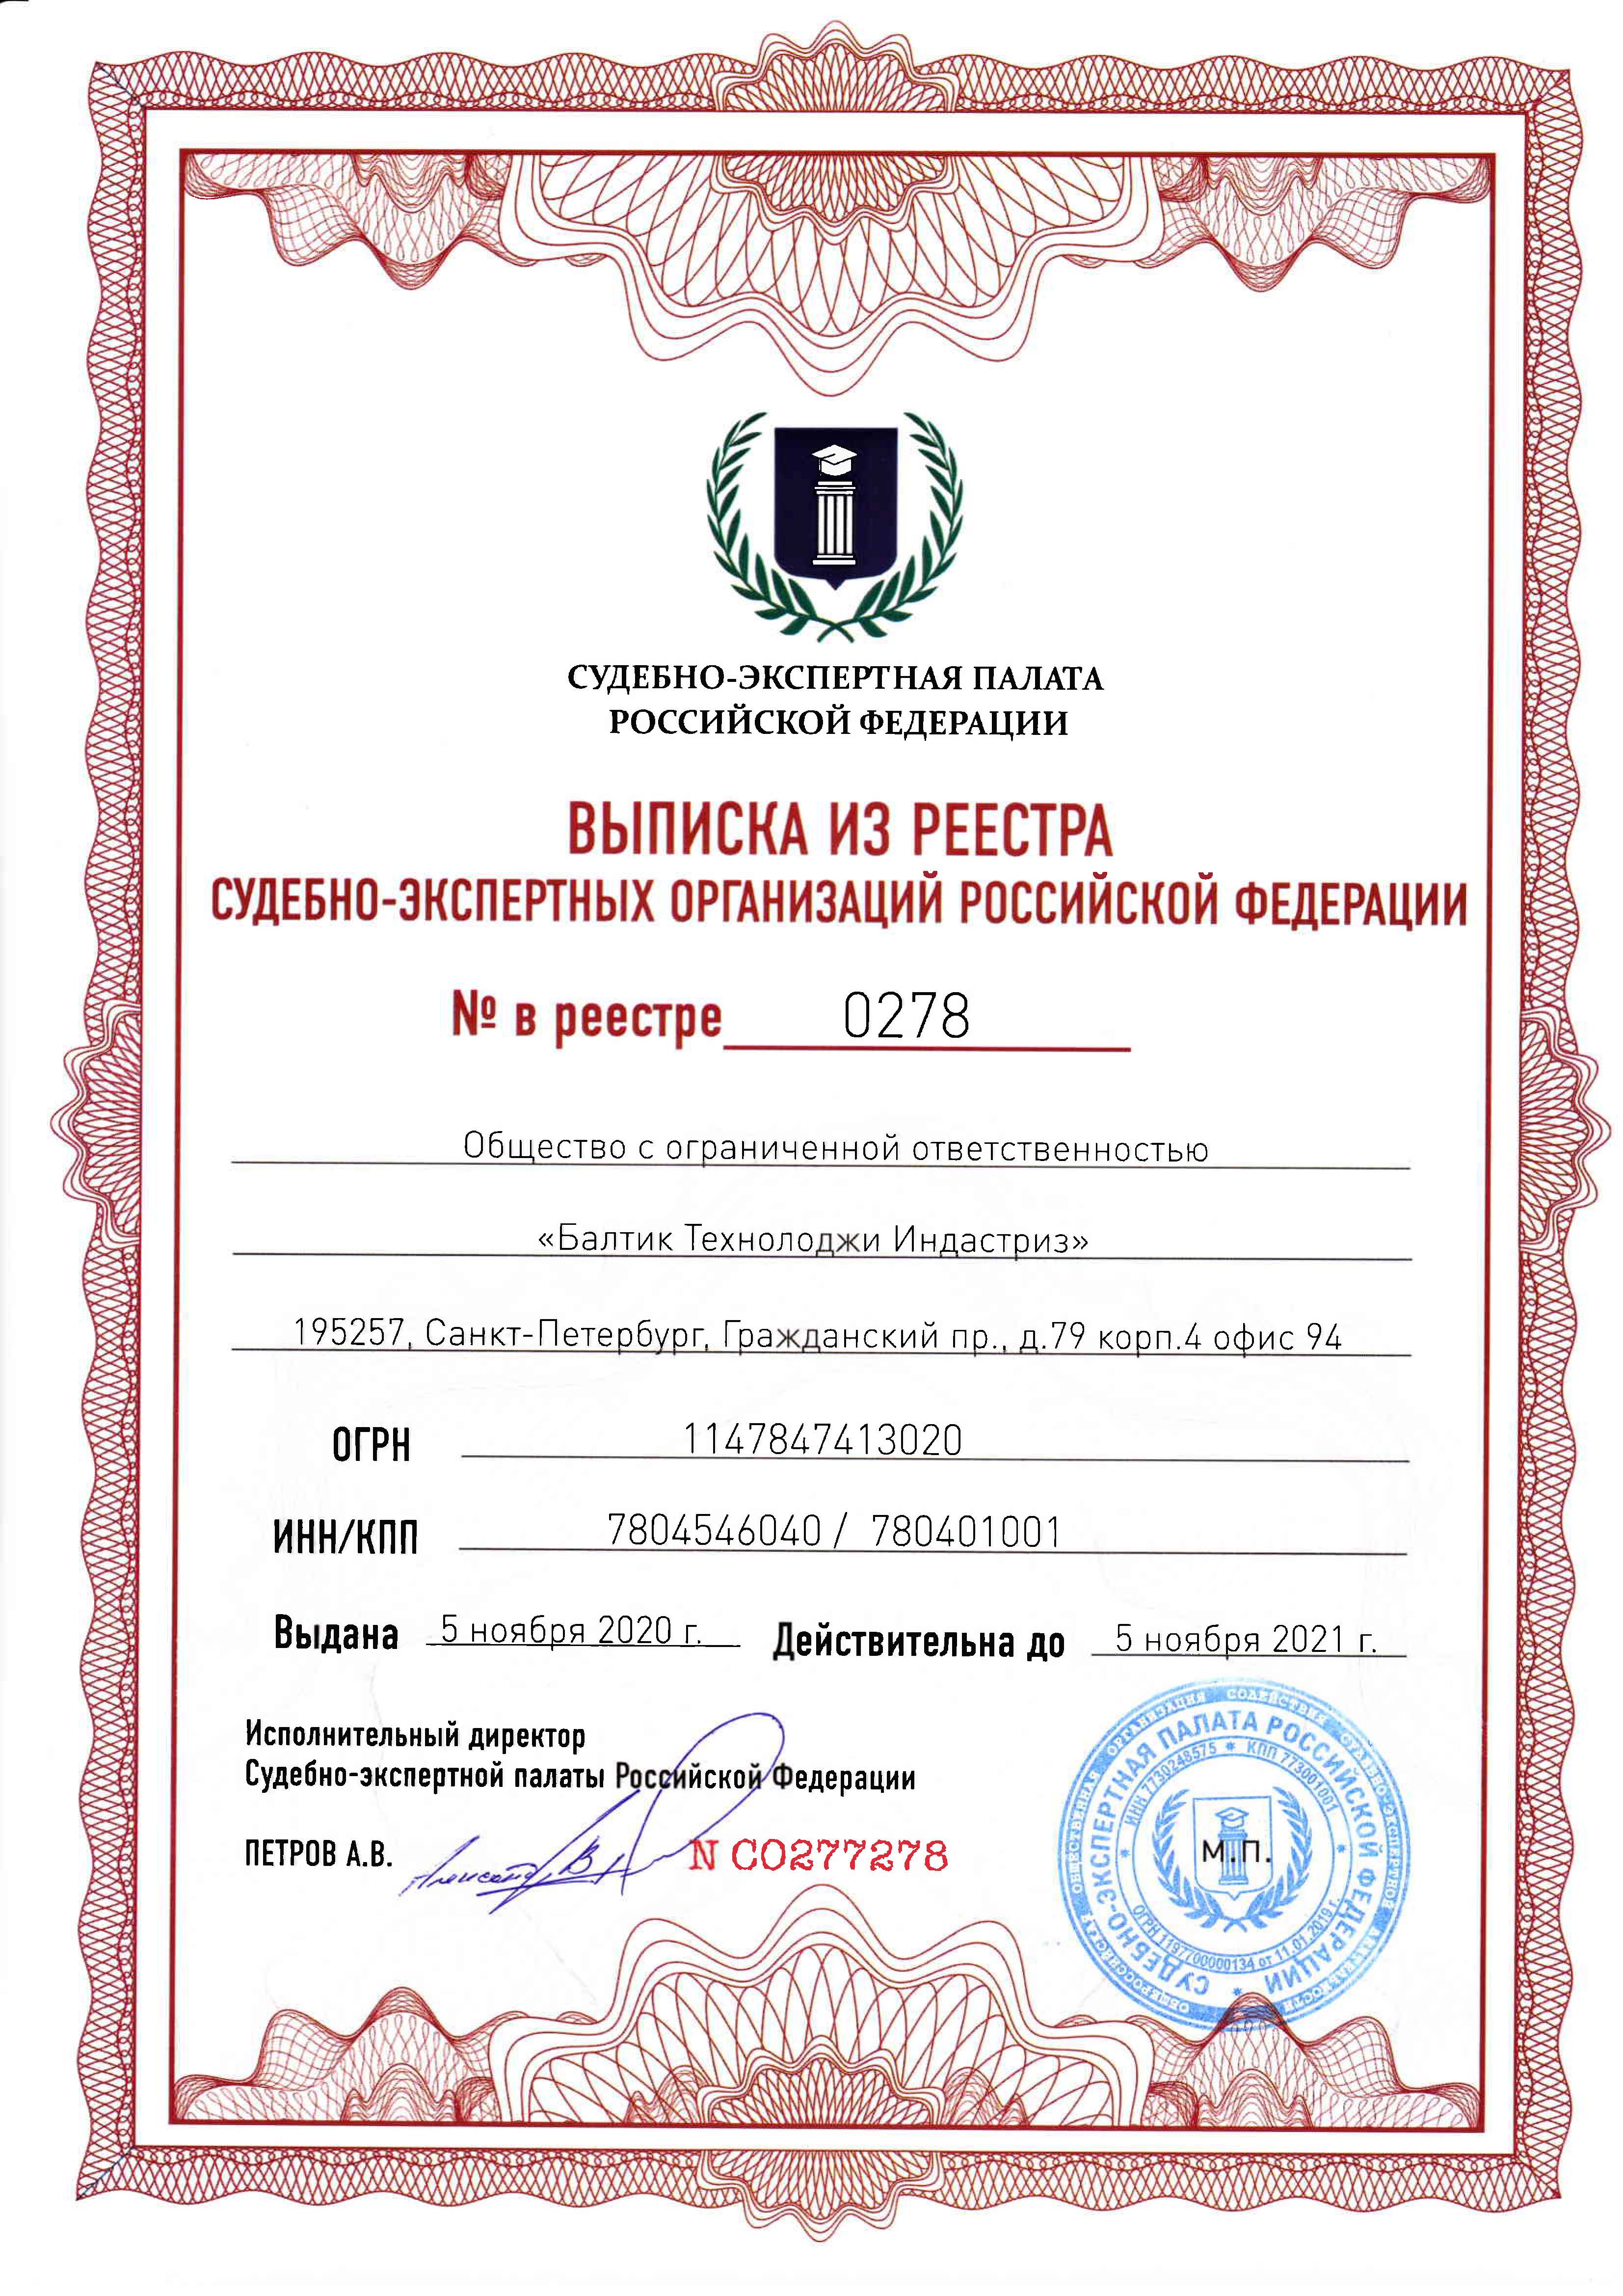 ООО «БТИ» включена в реестр экспертных организаций Судебно-Экспертной Палаты РФ.